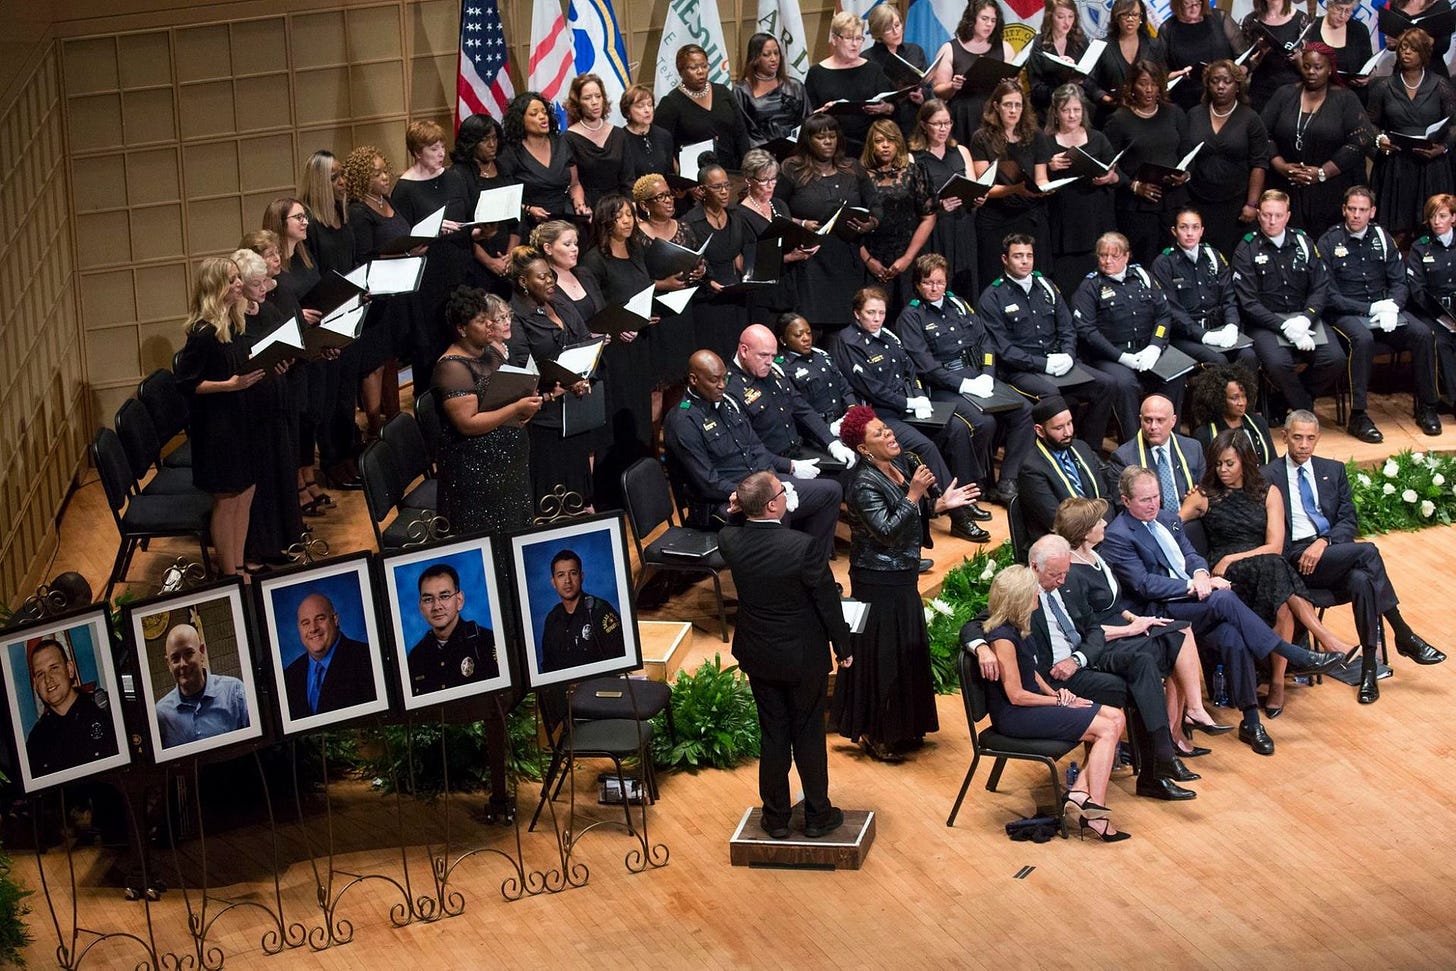 2016 Dallas police shooting memorial service.jpg